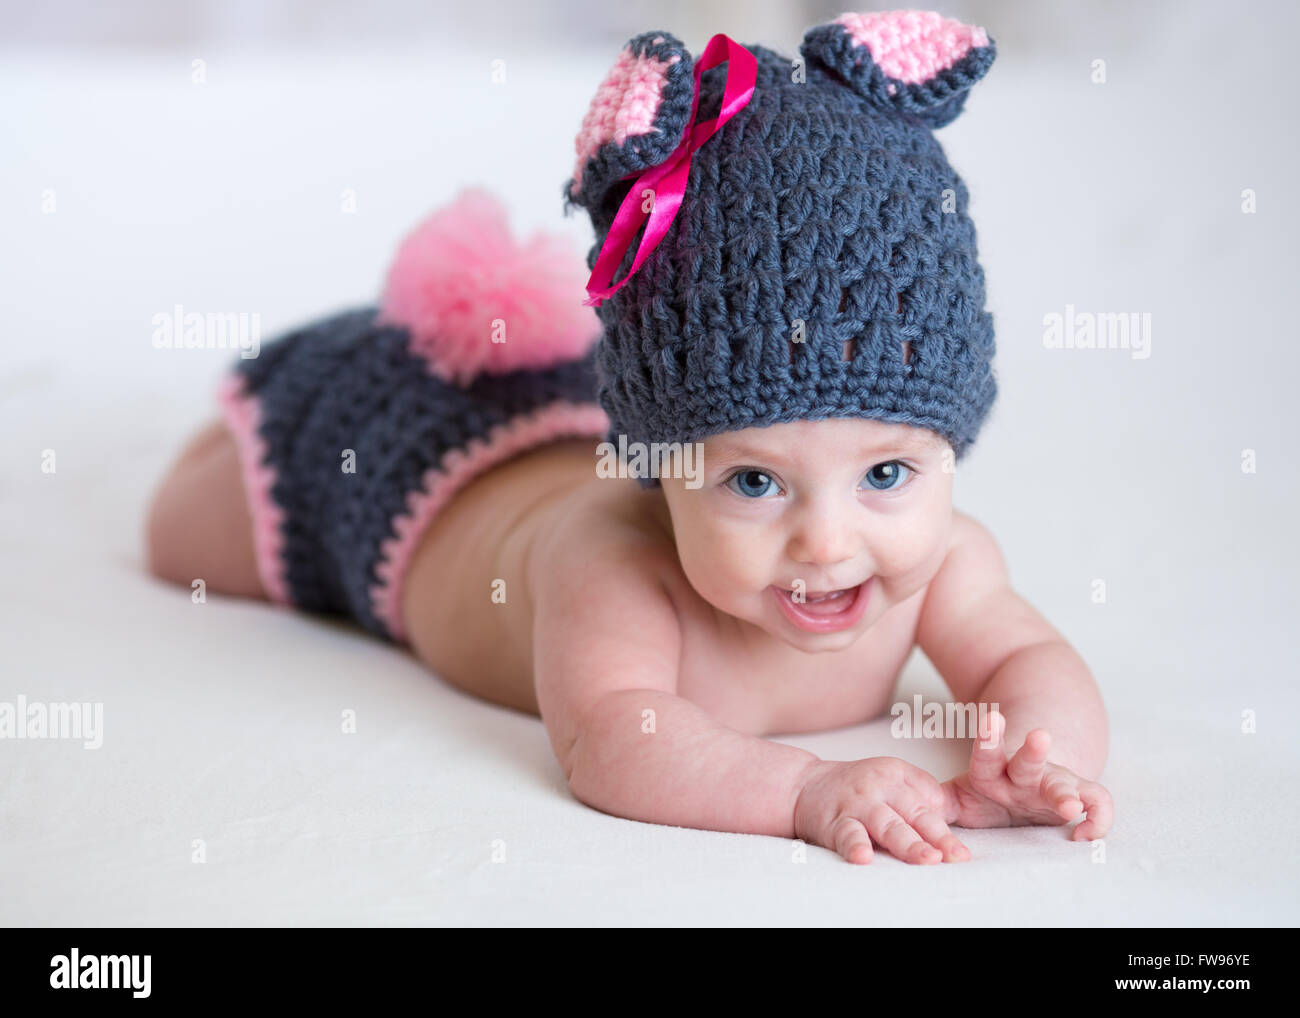 Heureux bébé enfant dans un costume de lapin lapin Banque D'Images